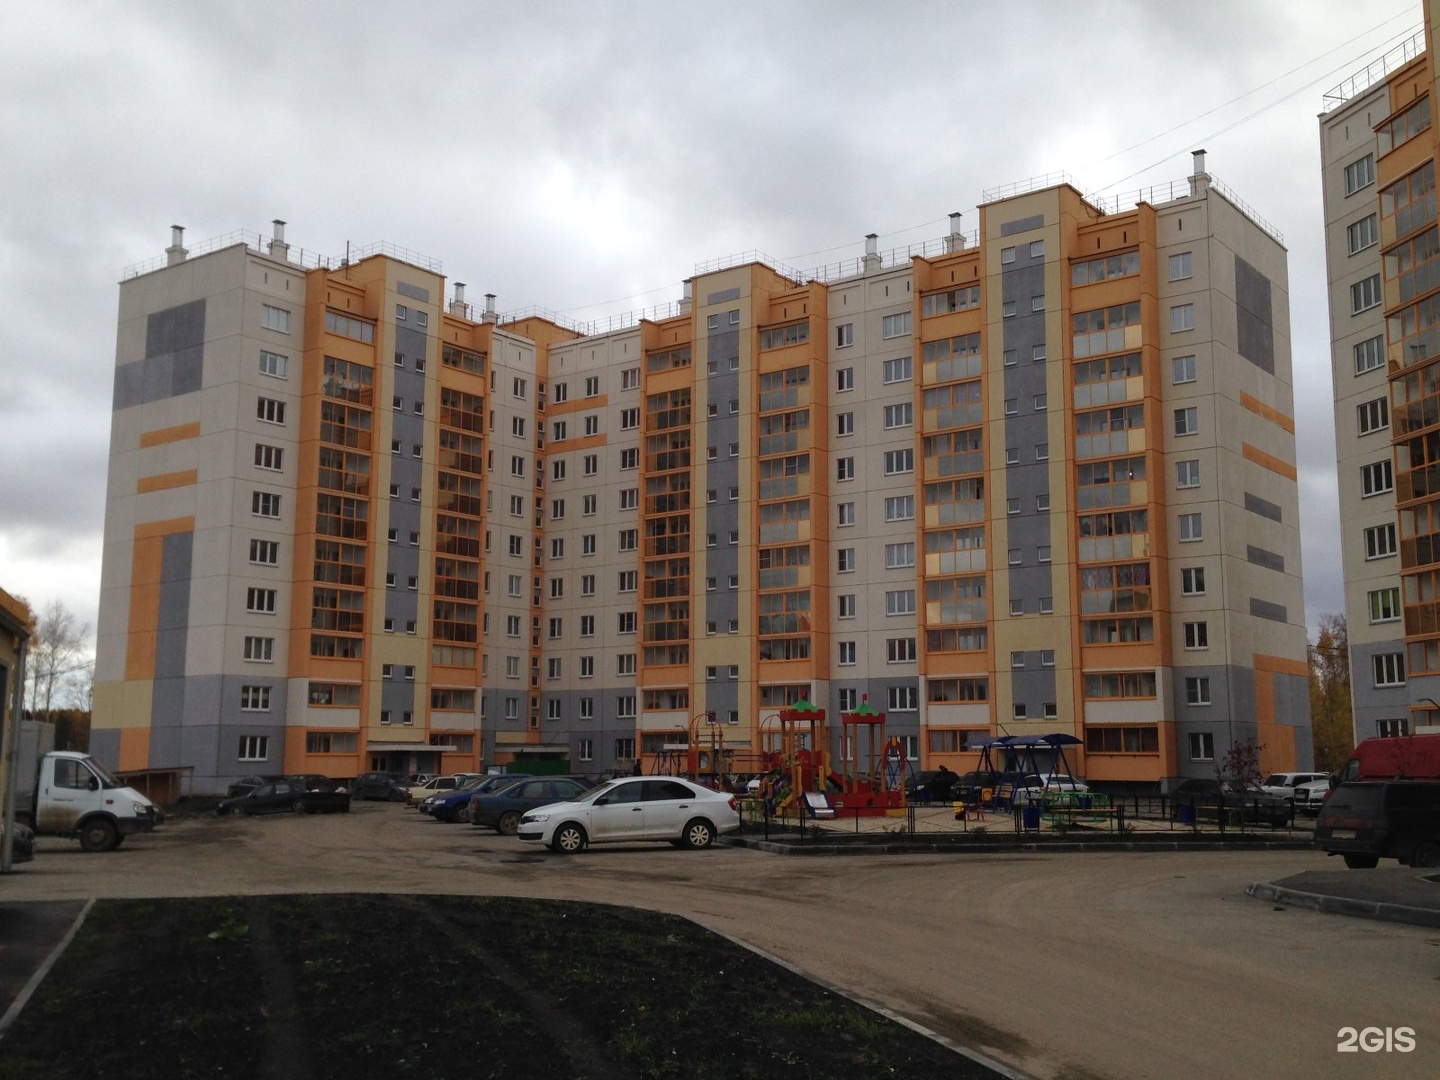 Купить квартиру в парковом районе. Парковый район Челябинск улица Шмакова.